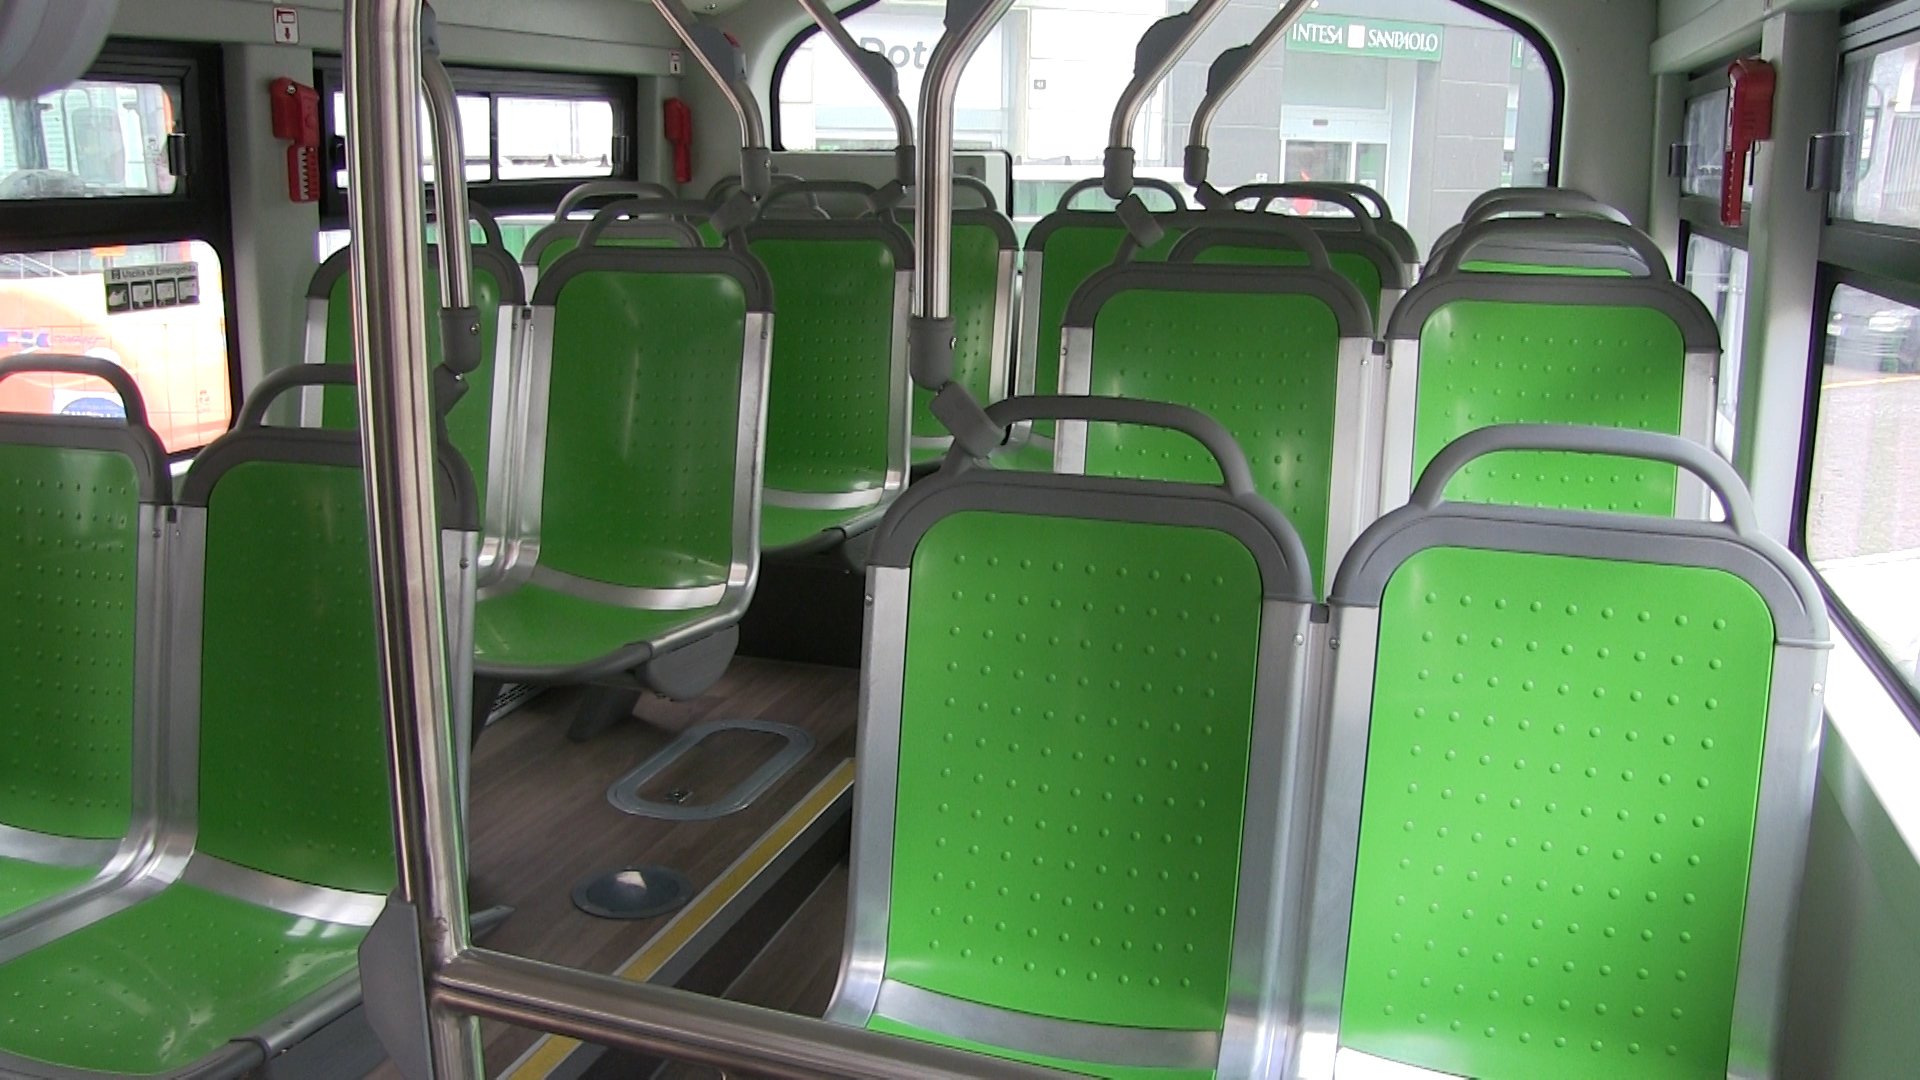 Trasporto pubblico: dal 10 luglio disponibili tutti i posti su linee extraurbane di treni, bus e taxi